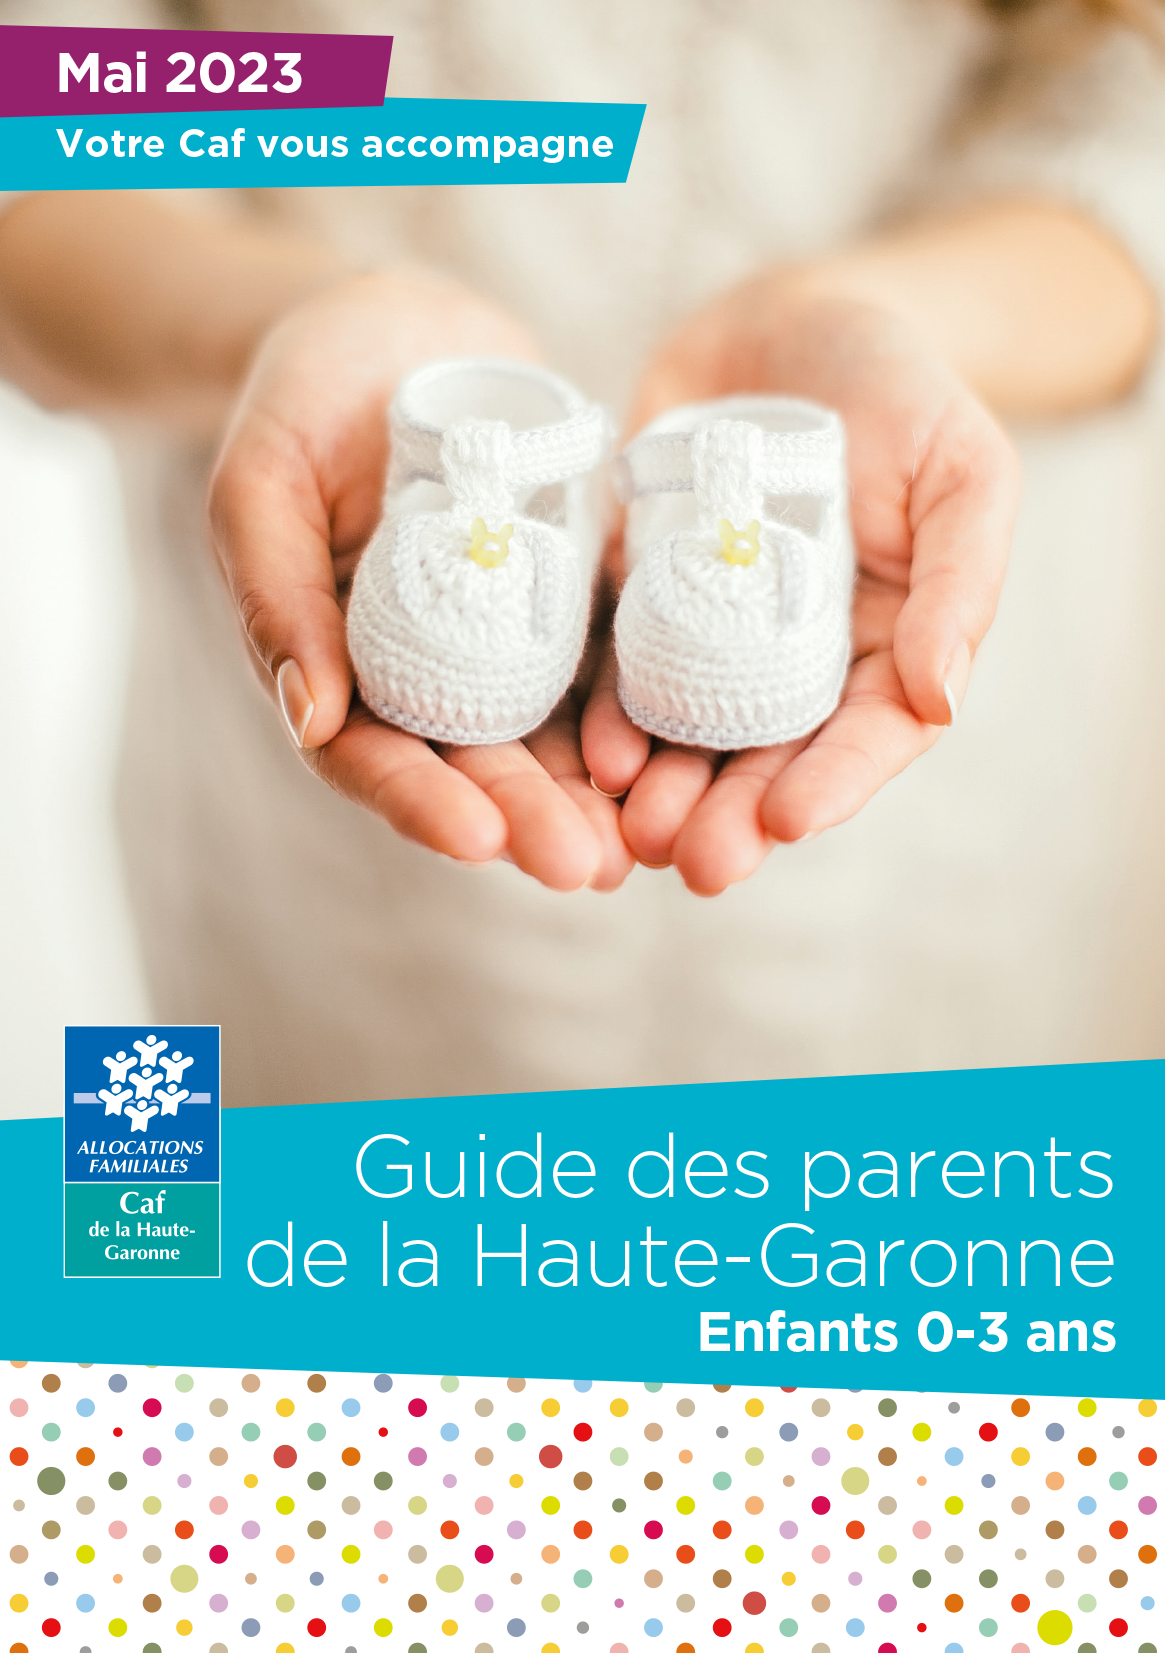 Guide des parents 2023